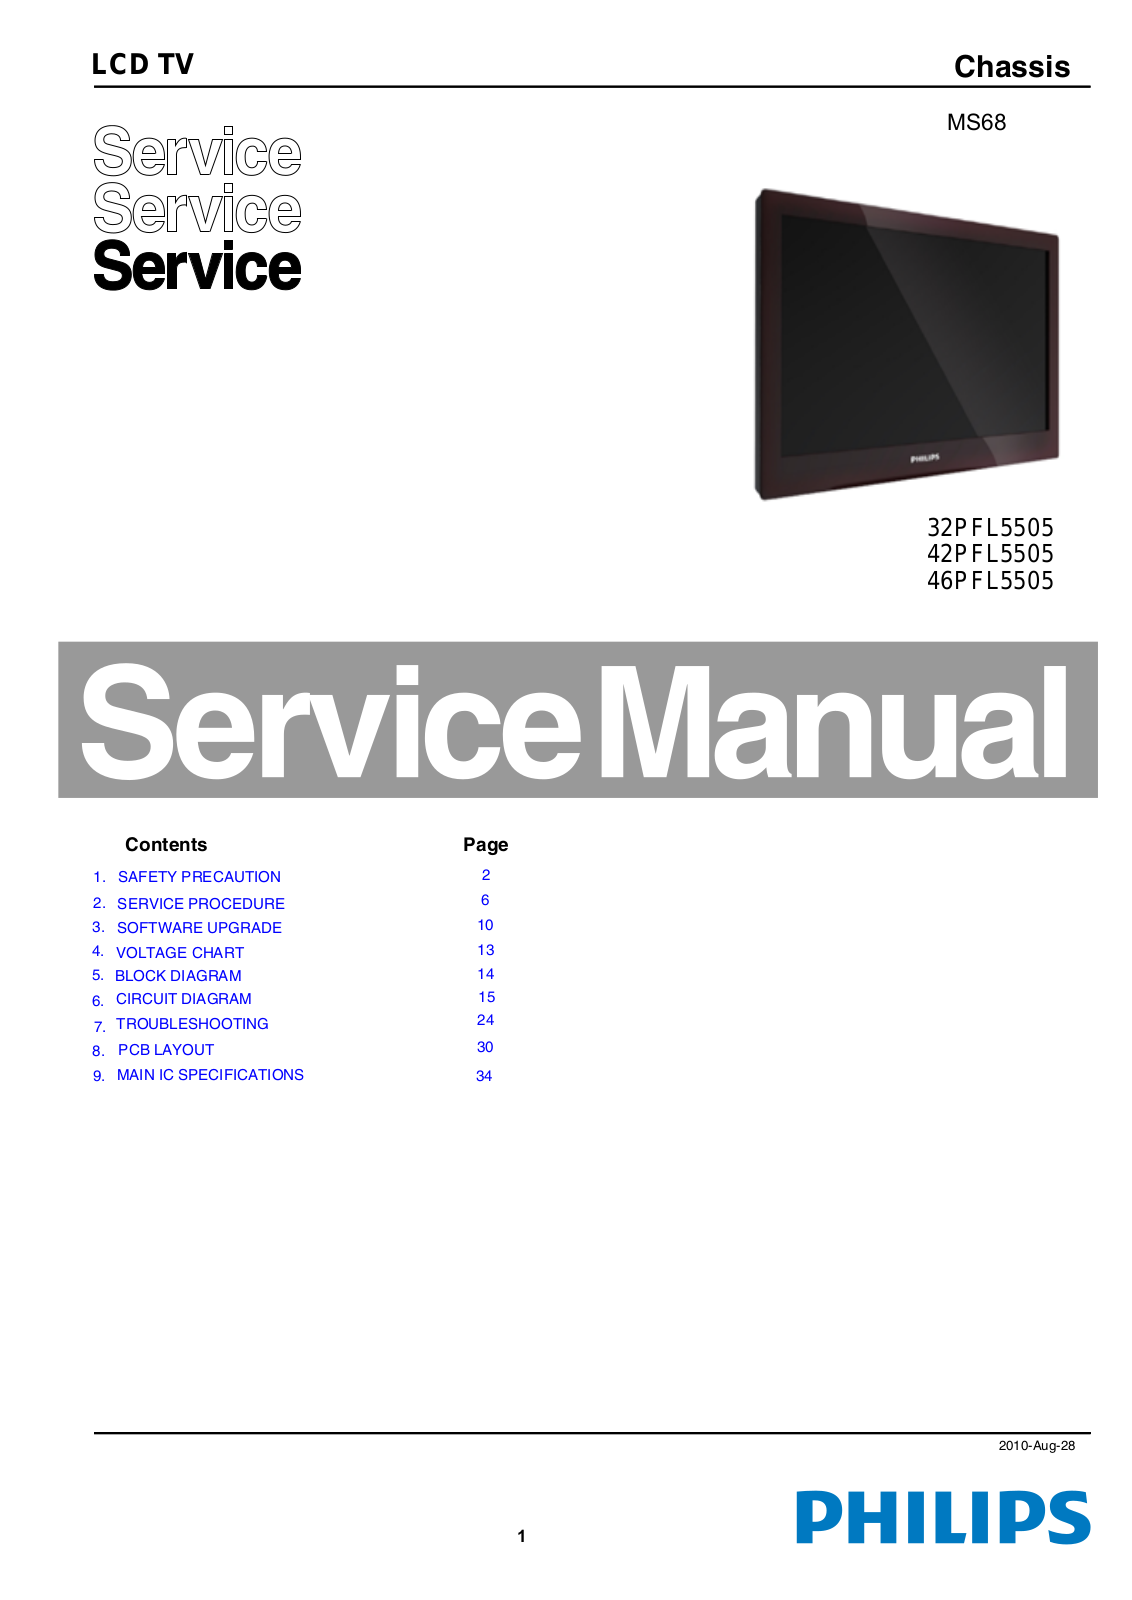 Philips 32PFL5505, 42PFL5505, 46PFL5505 Service Manual